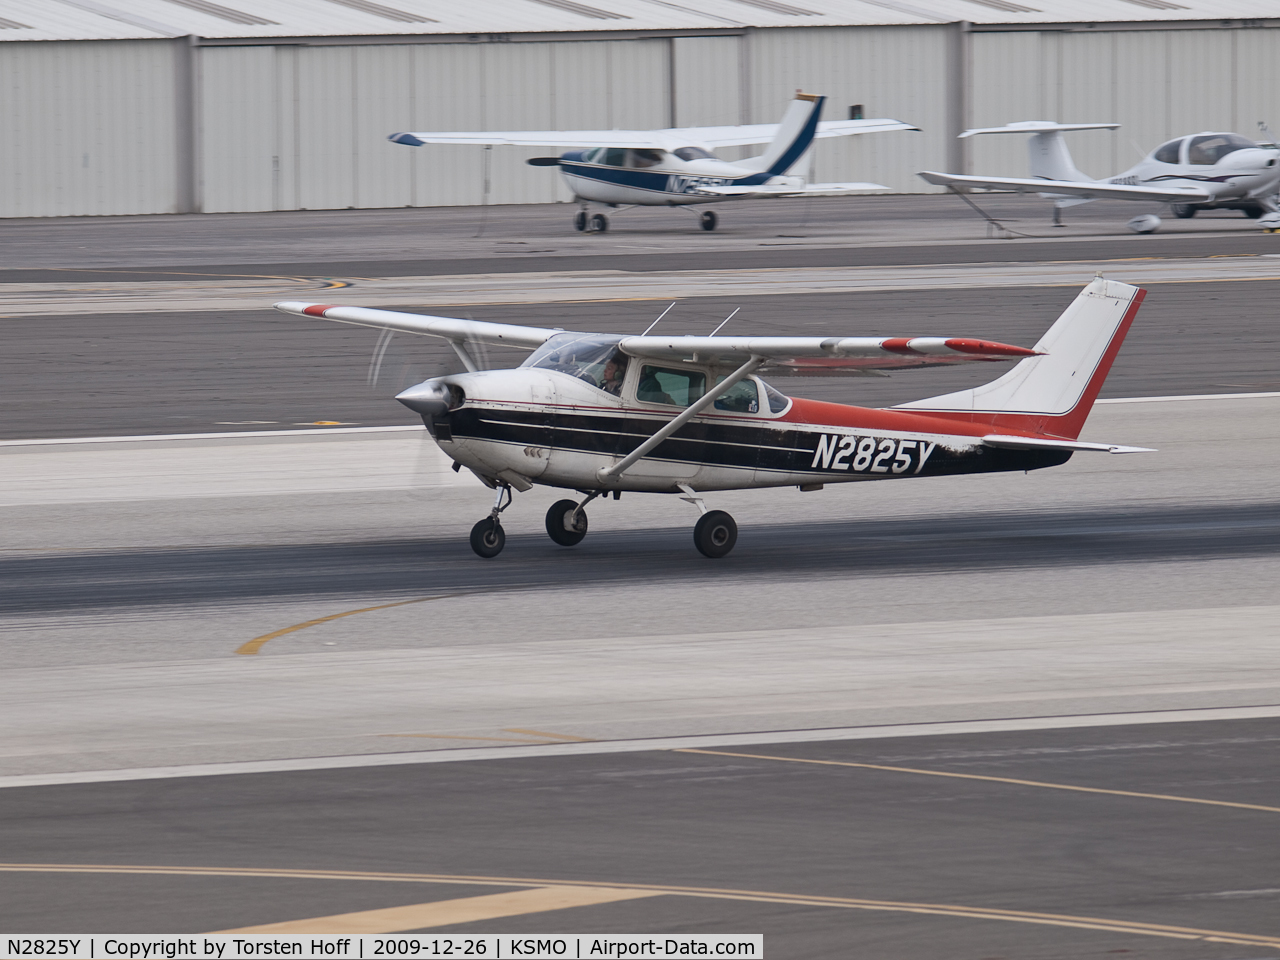 N2825Y, 1962 Cessna 182E Skylane C/N 18253825, N2825Y departing from RWY 21